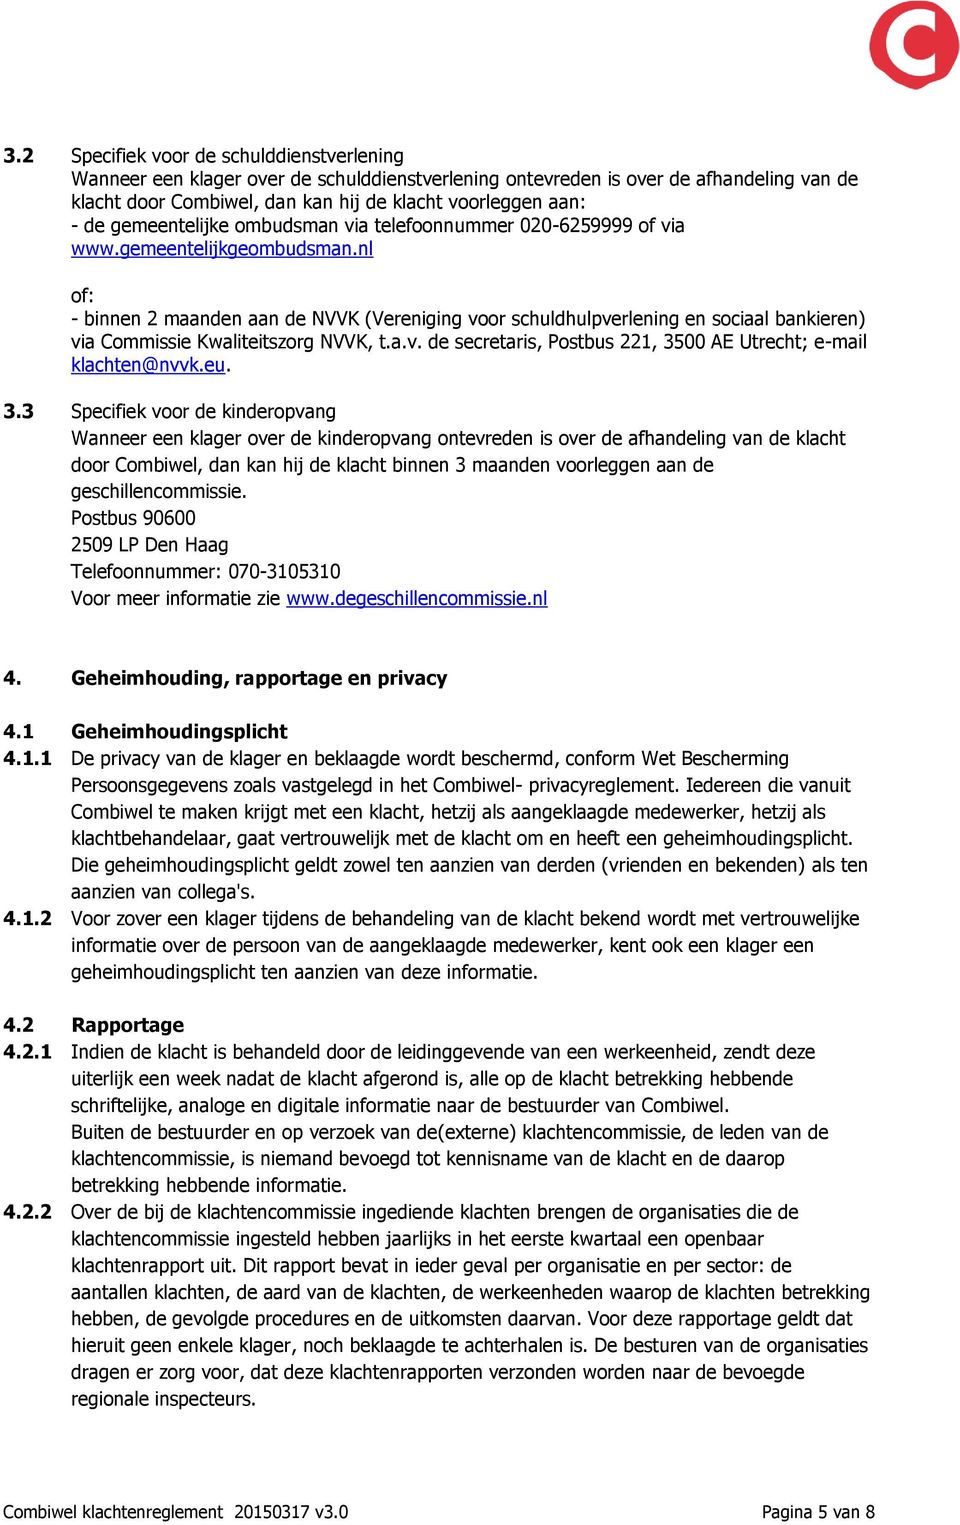 nl of: - binnen 2 maanden aan de NVVK (Vereniging voor schuldhulpverlening en sociaal bankieren) via Commissie Kwaliteitszorg NVVK, t.a.v. de secretaris, Postbus 221, 3500 AE Utrecht; e-mail klachten@nvvk.